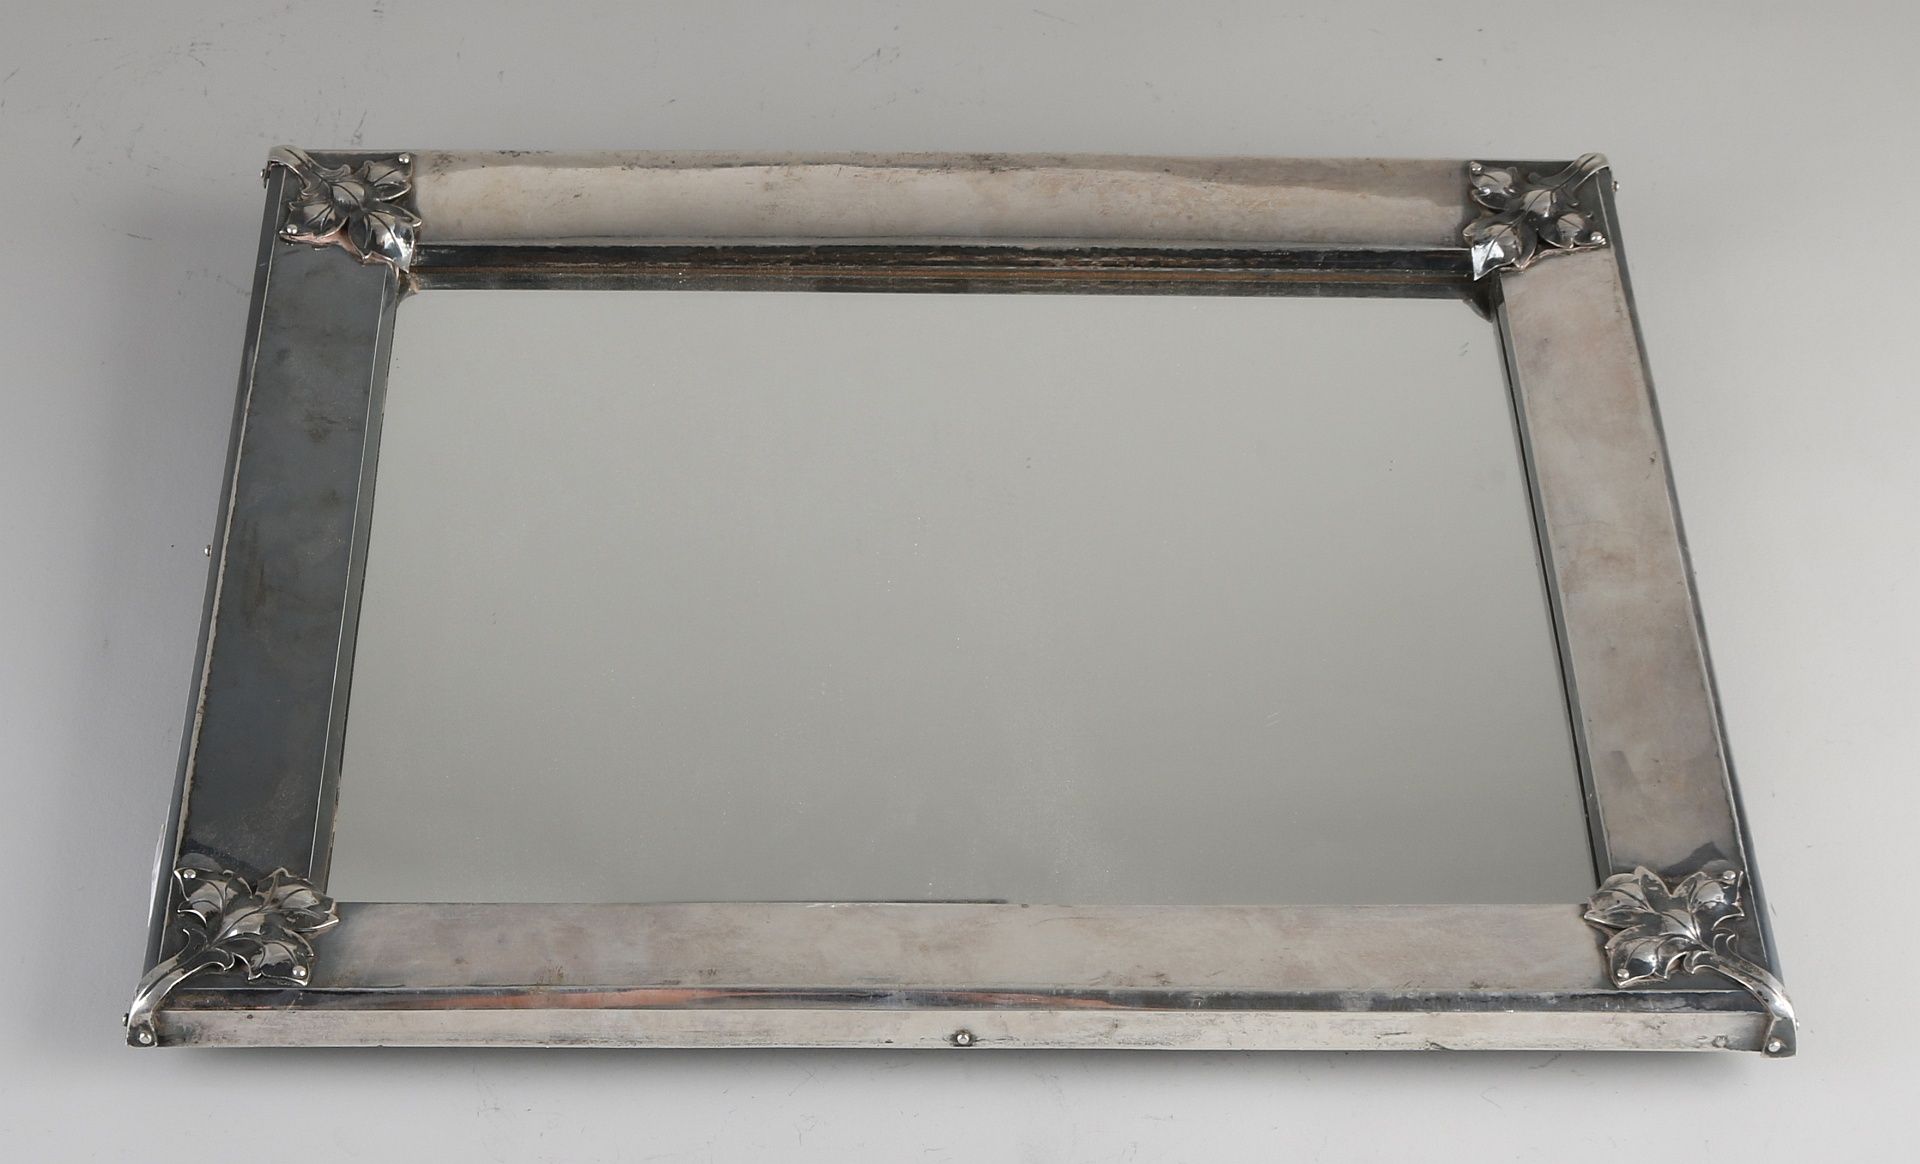 Silberner Spiegel, 835/000, großer rechteckiger Silberrahmen mit Blattdekoration an den Ecken. Mi